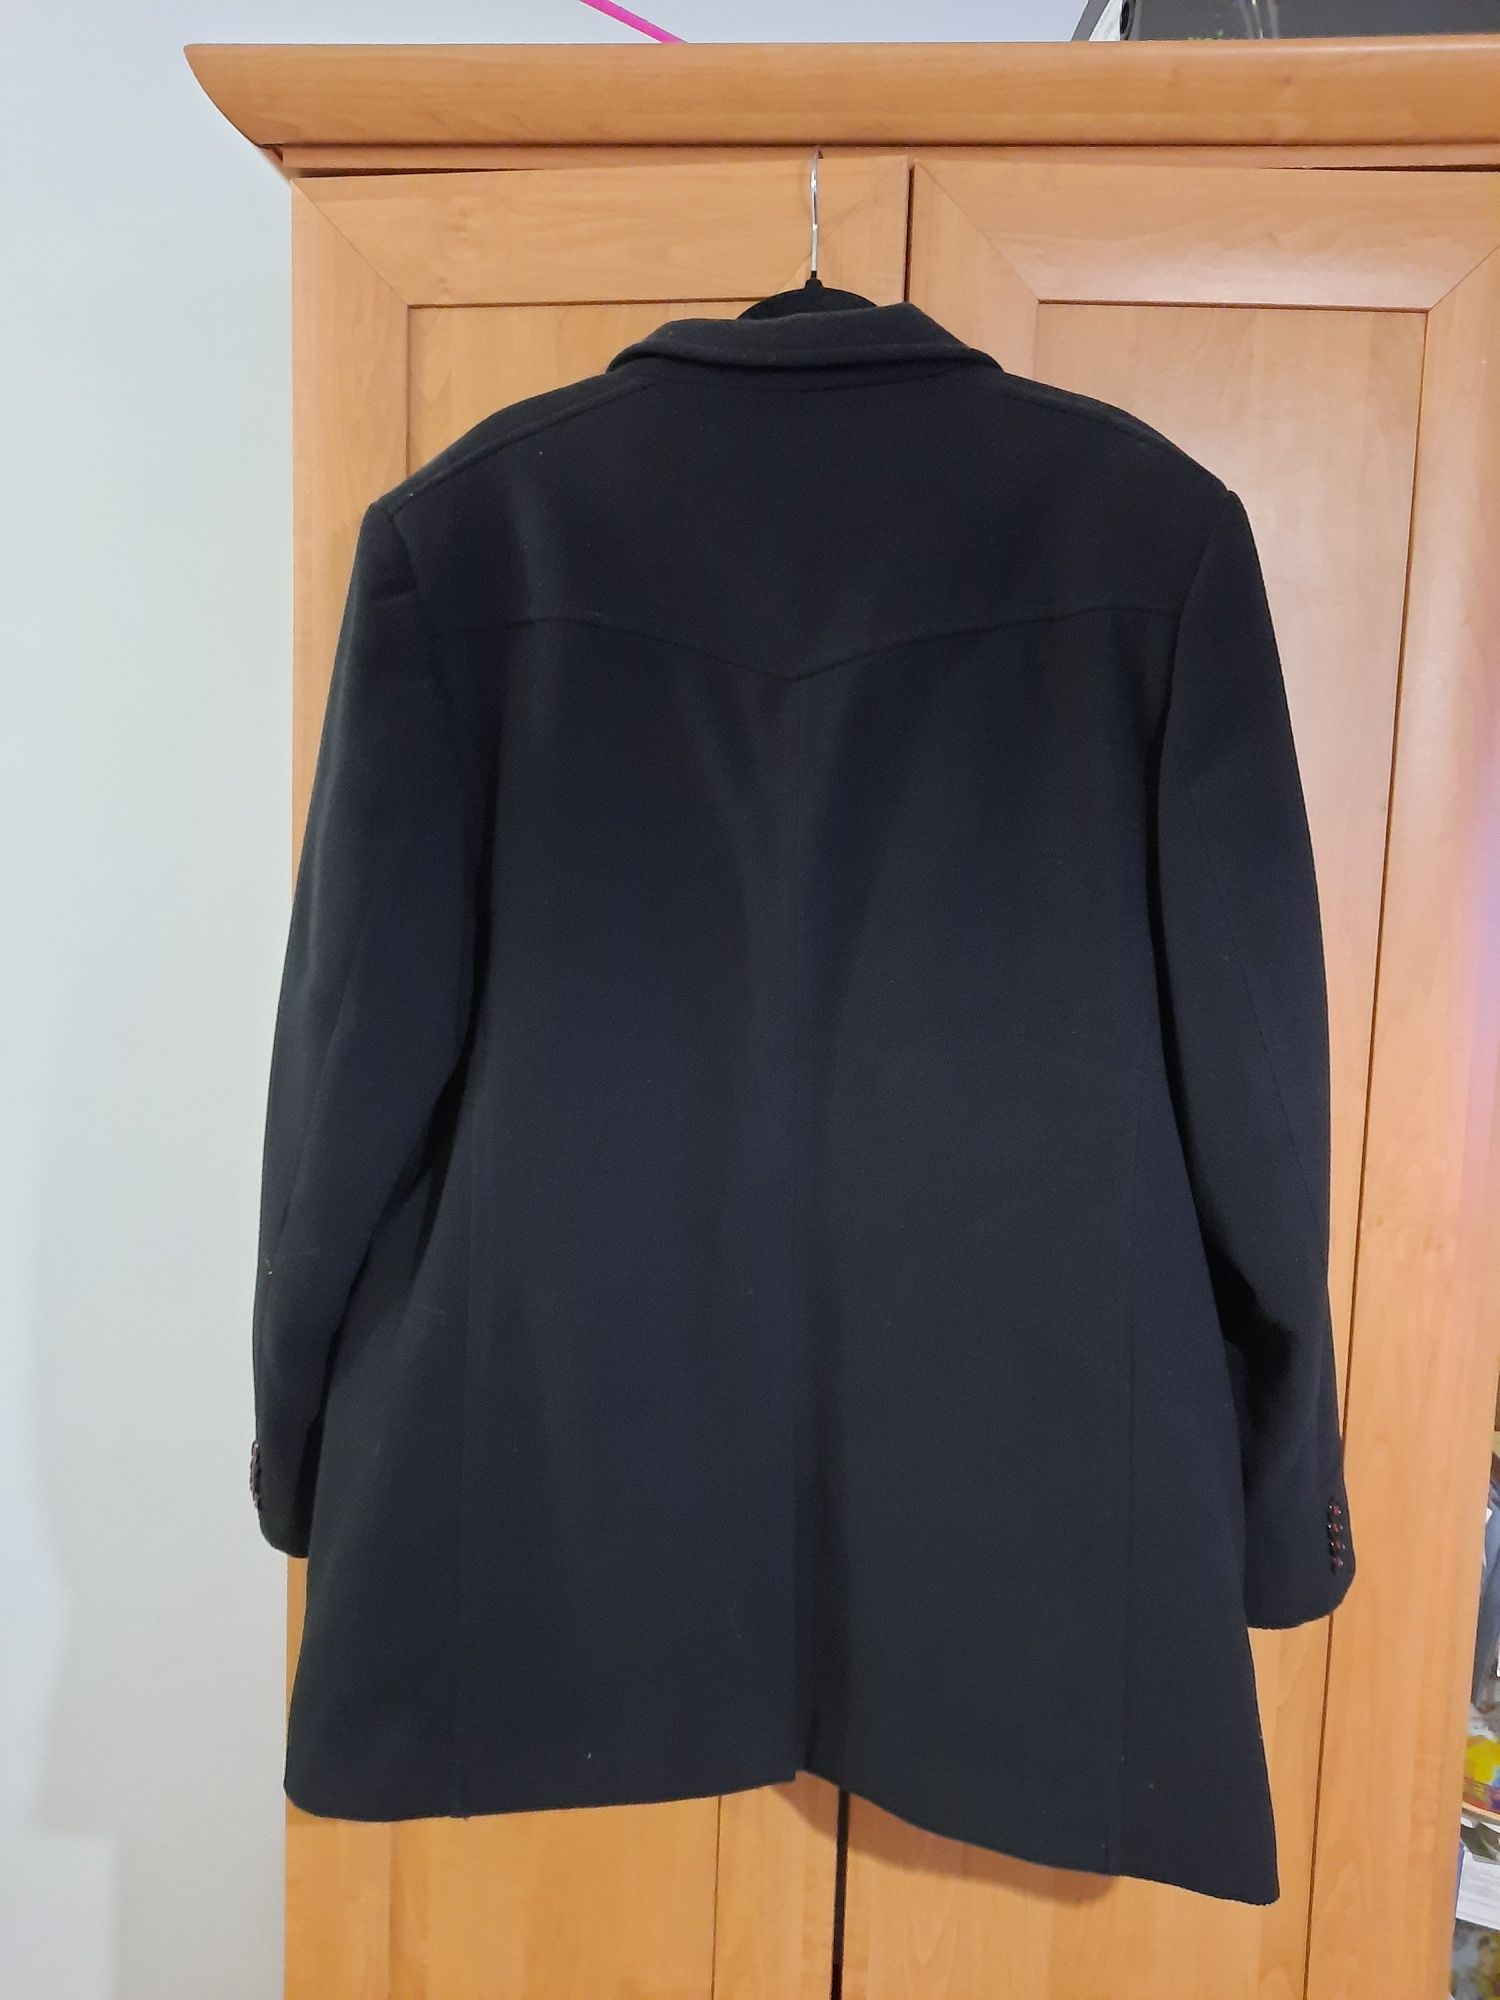 Płaszcz męski L/XL czarny zimowy